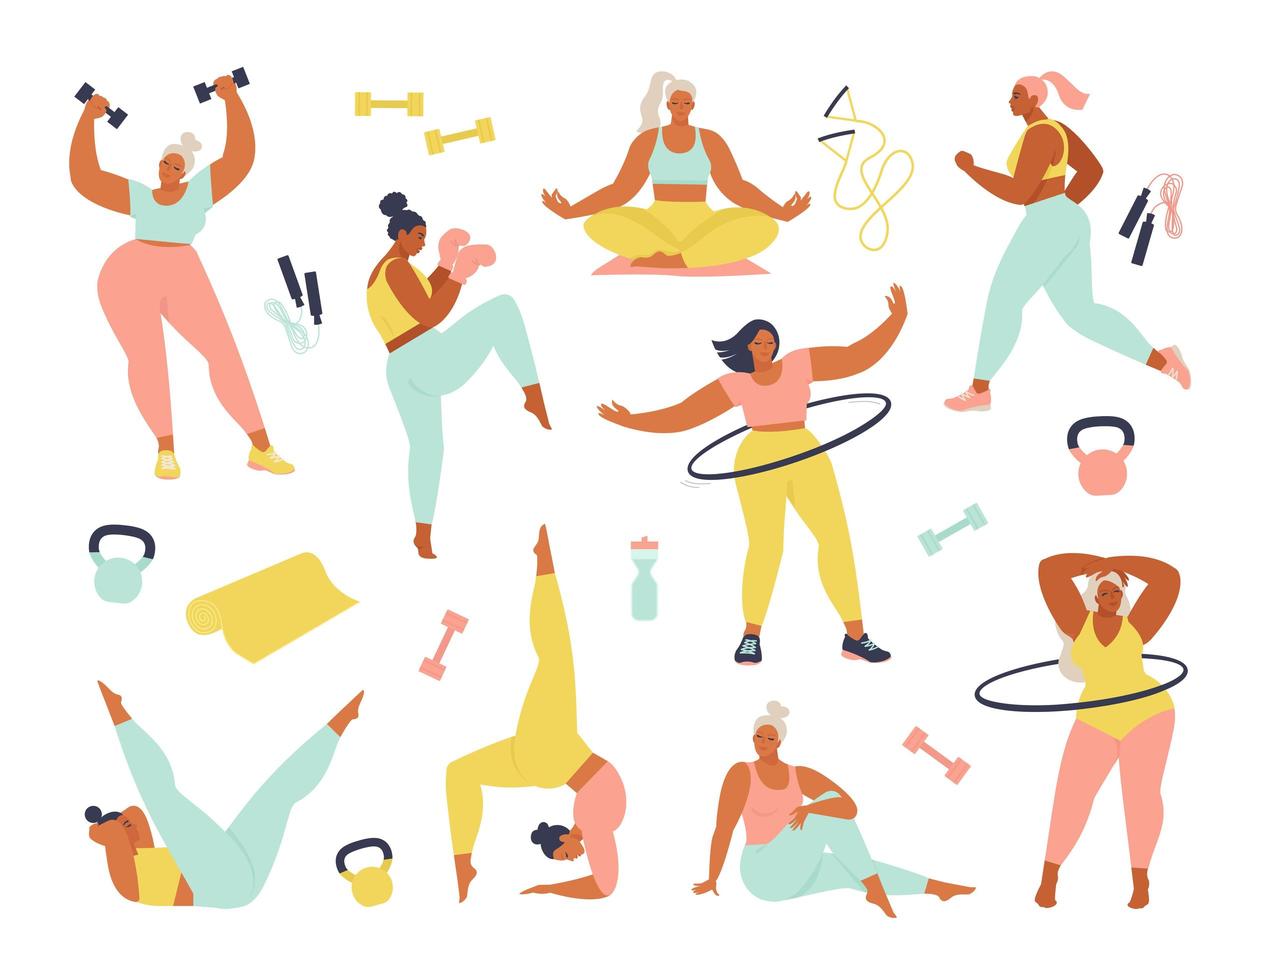 femmes de différentes tailles, âges et activités de courses. ensemble de femmes faisant du sport, yoga, jogging, saut, étirement, fitness. sport femmes vector illustration plate isolée sur fond blanc.